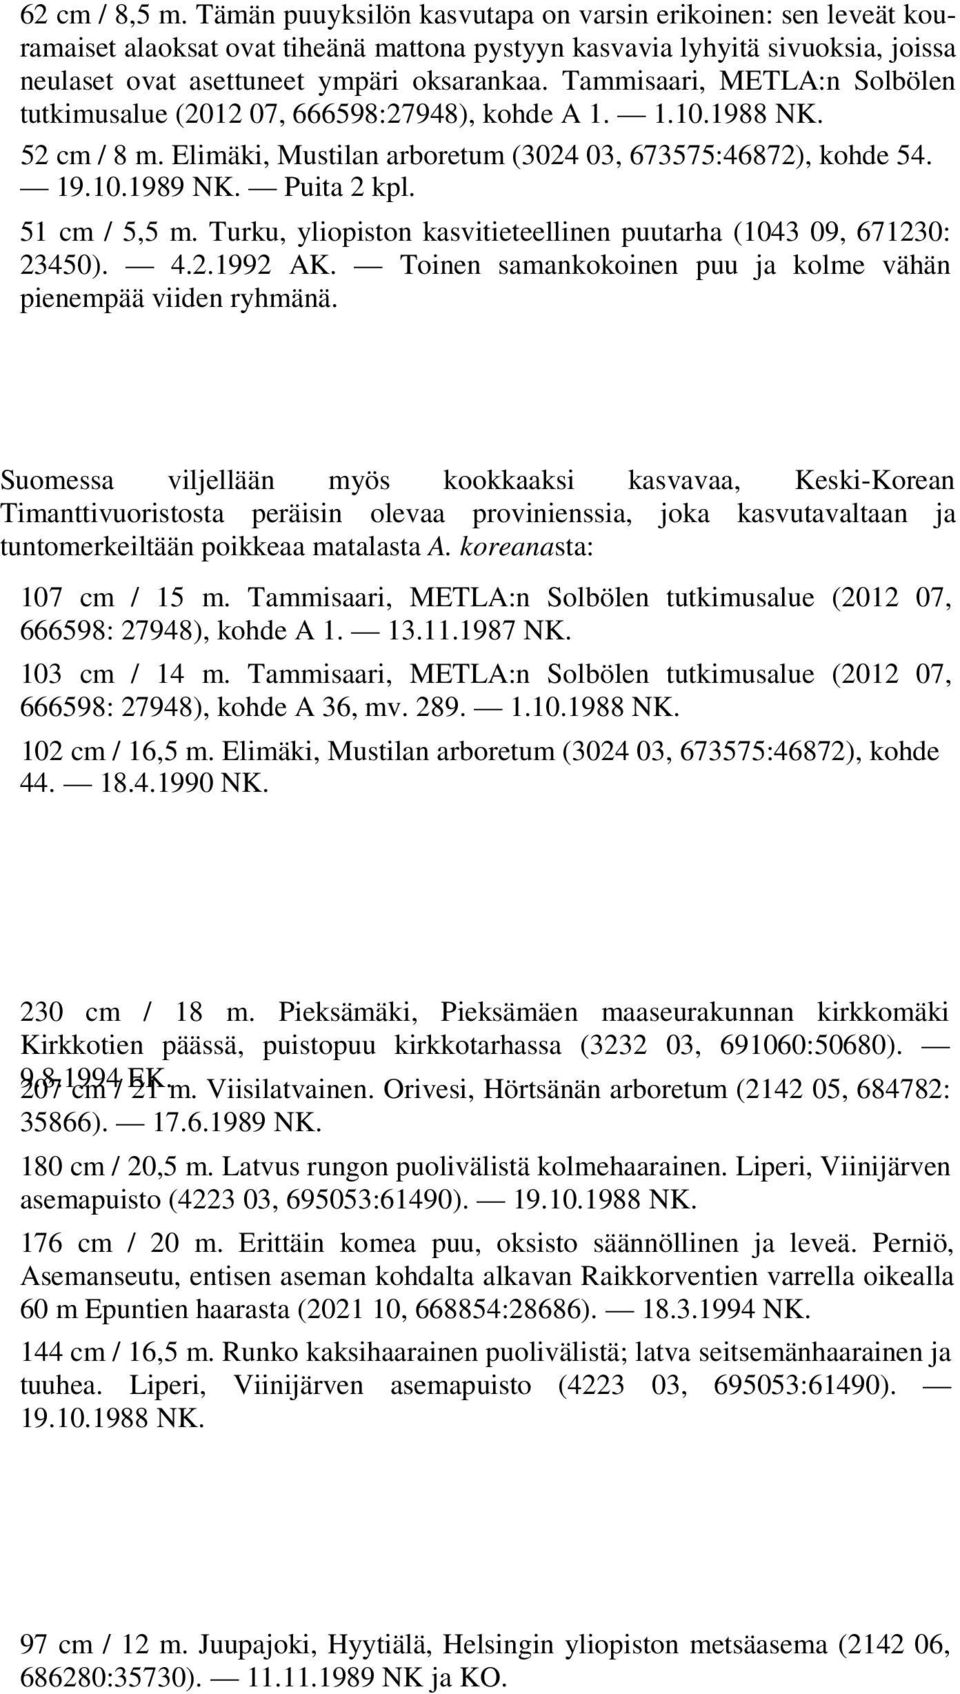 Tammisaari, METLA:n Solbölen tutkimusalue (2012 07, 666598:27948), kohde A 1. 1.10.1988 NK. 52 cm / 8 m. Elimäki, Mustilan arboretum (3024 03, 673575:46872), kohde 54. 19.10.1989 NK. Puita 2 kpl.